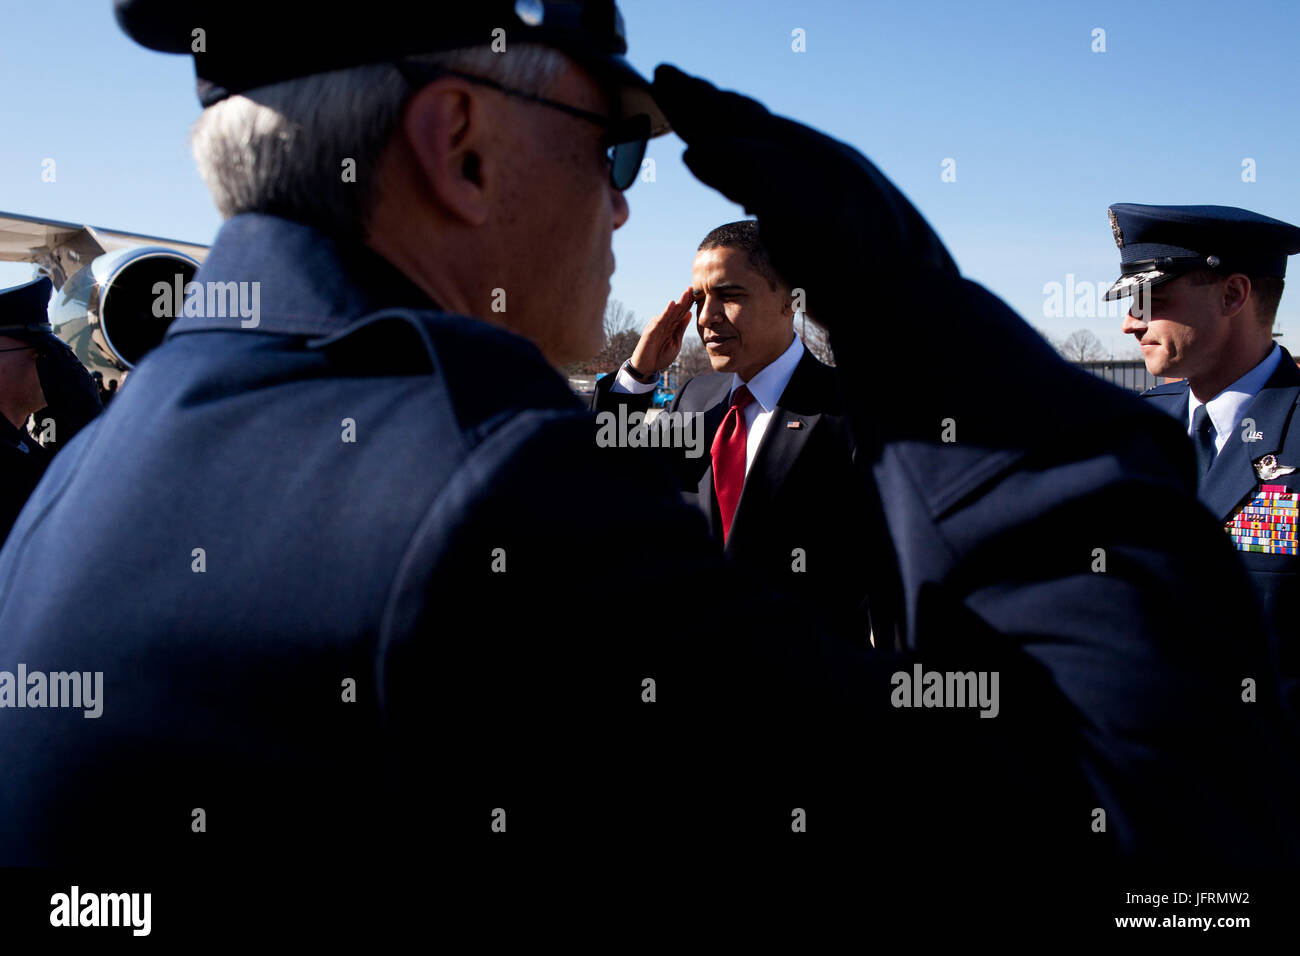 Le président américain Barack Obama salue, au départ de la base aérienne d'Andrews pour Denver, Colorado 2/17/09. Photo Officiel de la Maison Blanche par Pete Souza Banque D'Images